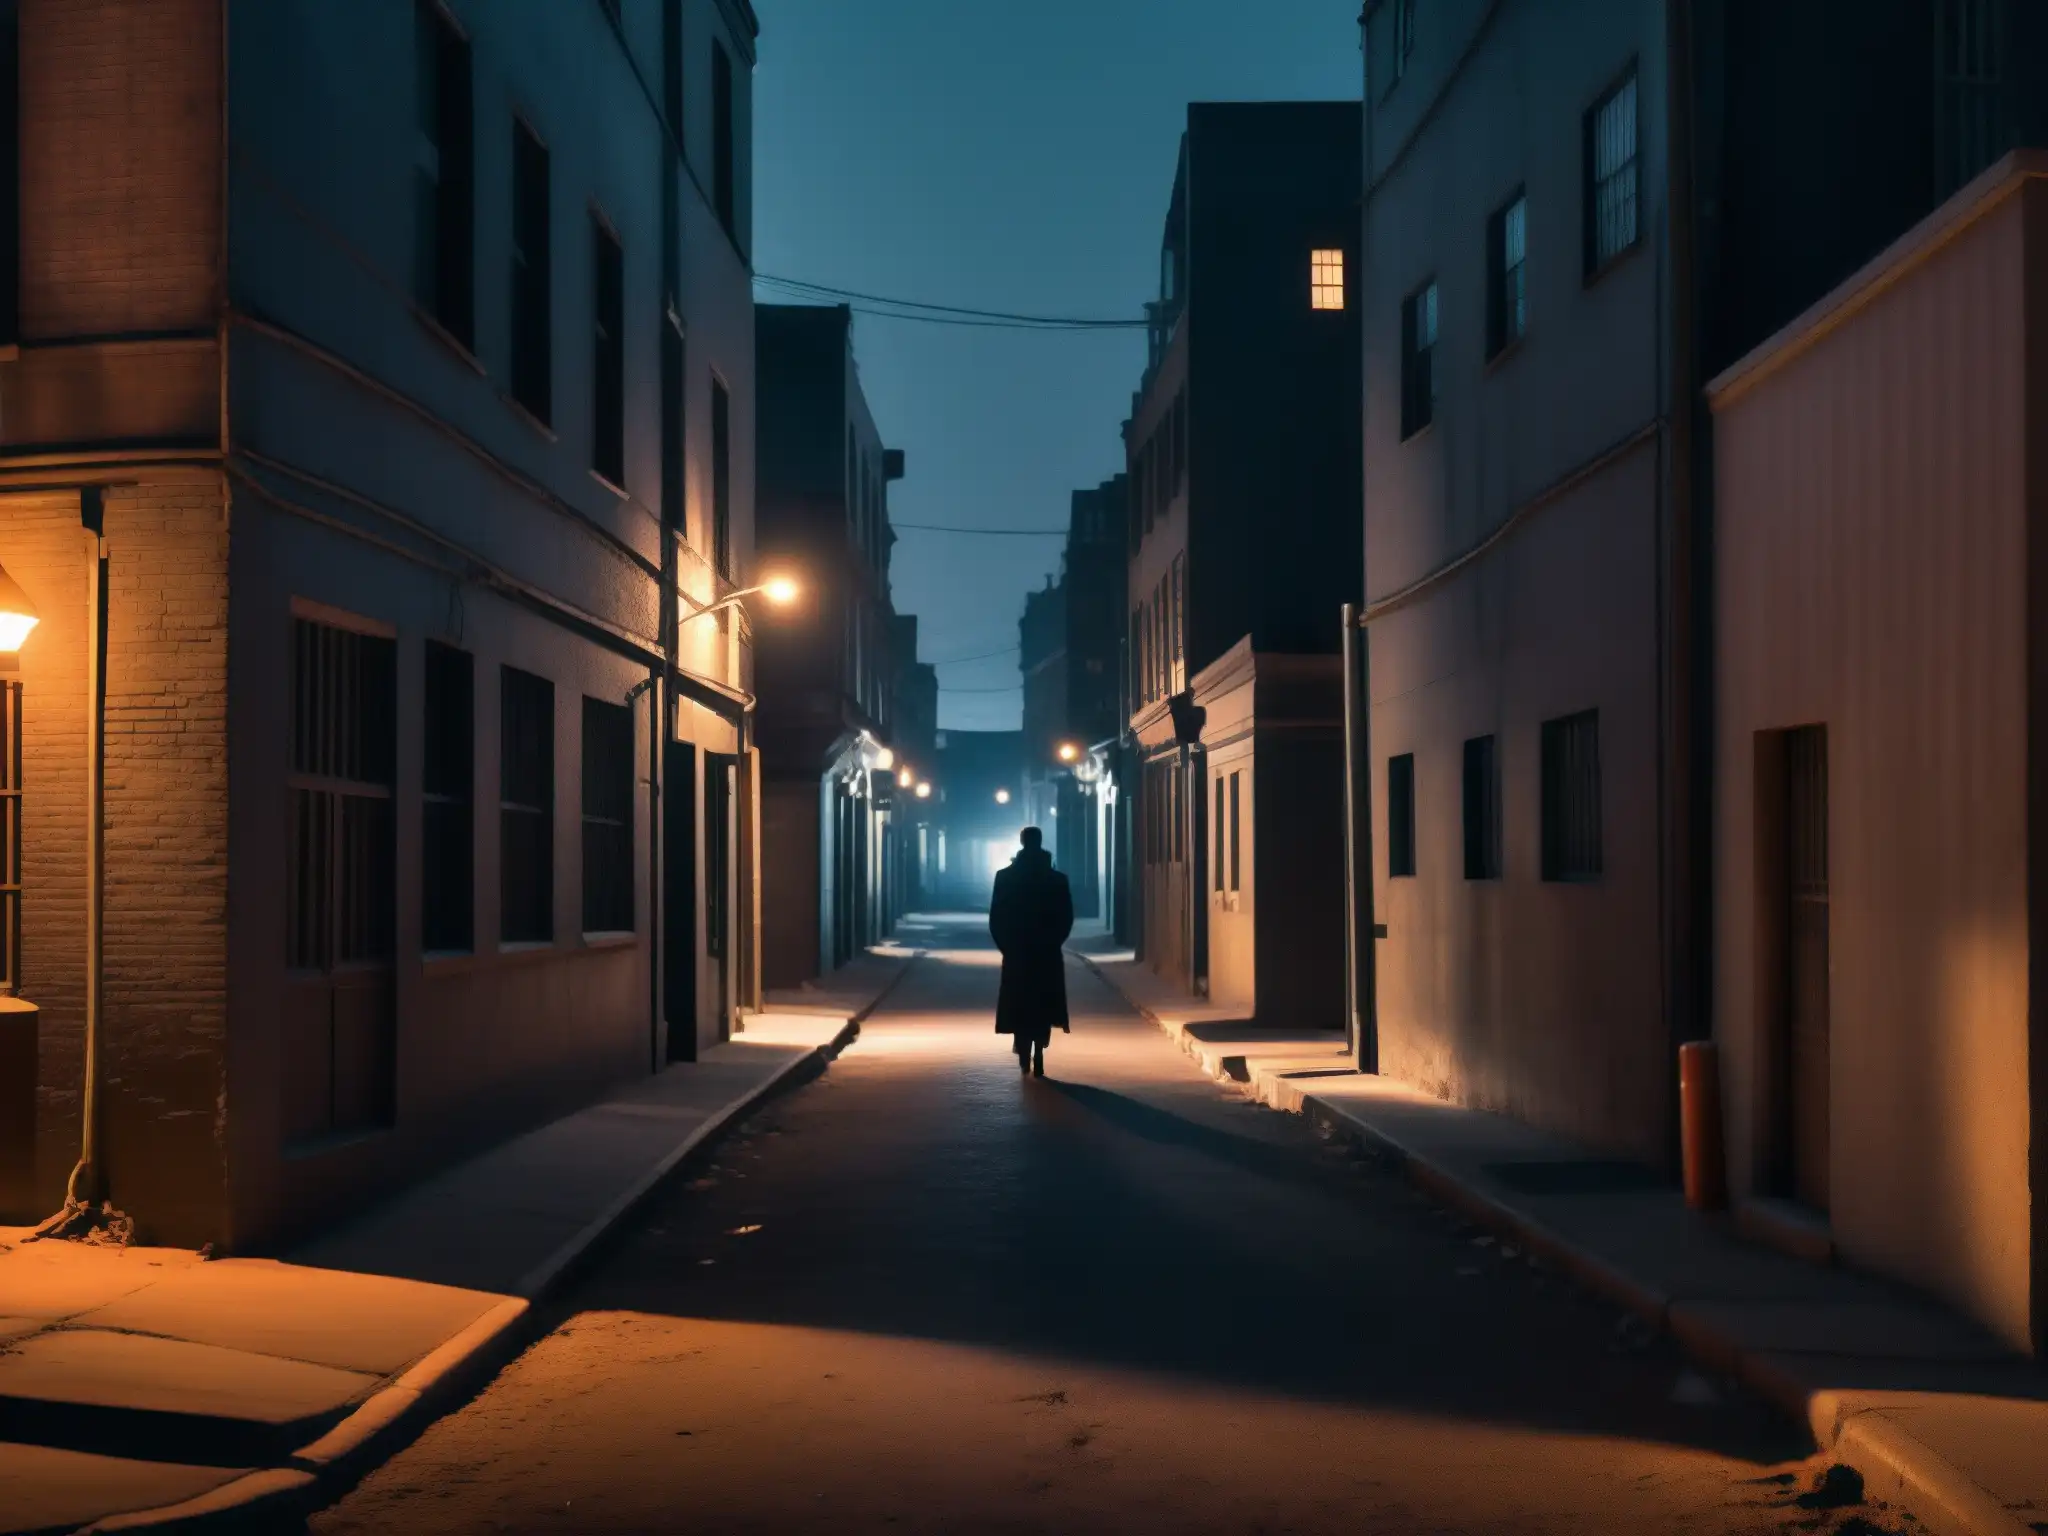 La misteriosa presencia de TekeTeke se percibe en la oscura y desolada calle de la ciudad por la noche